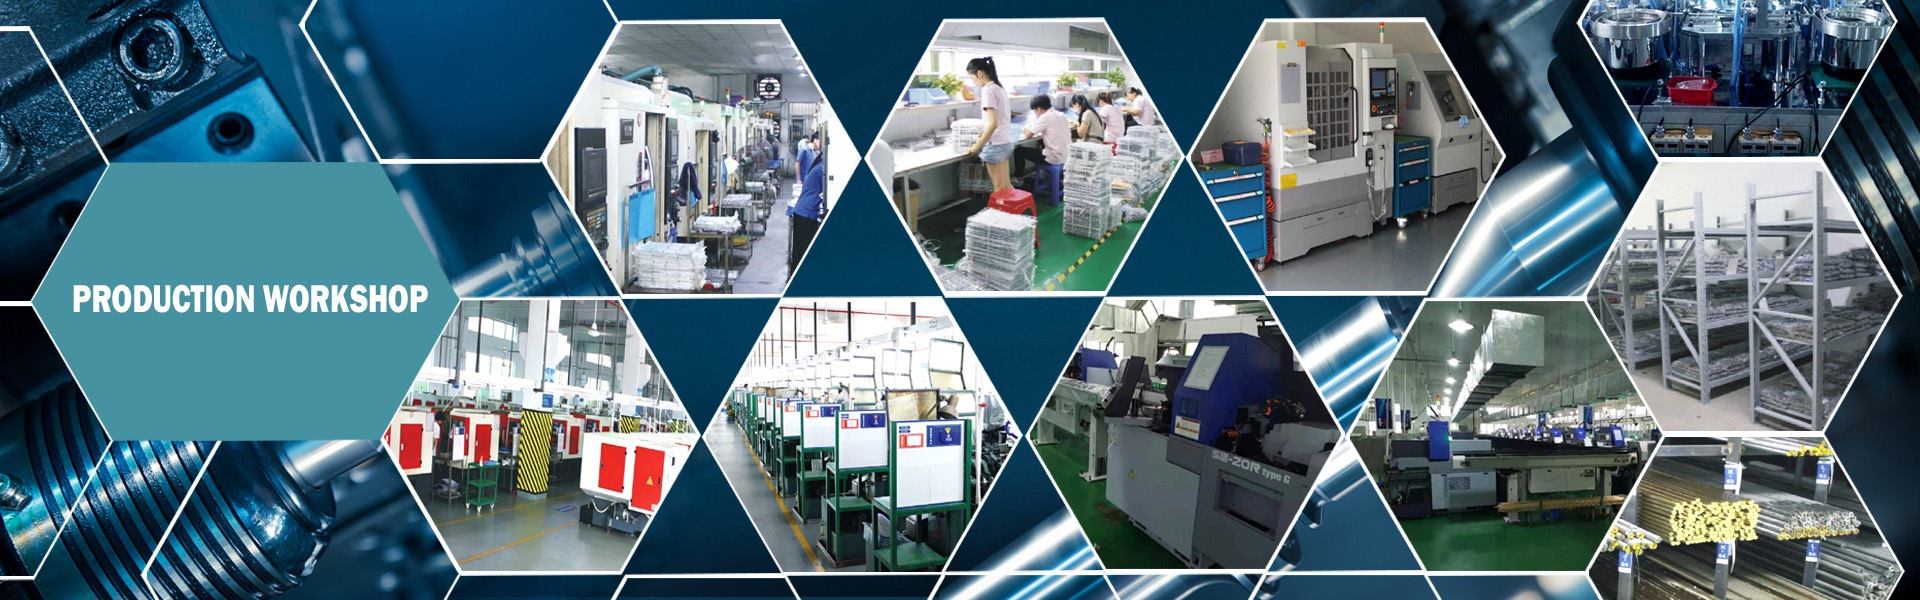 Υλικό ακρίβειας, χύτευση αλουμινίου, σχηματισμός προφίλ,Dongguan Xililai Precision Hardware Co.,Ltd.